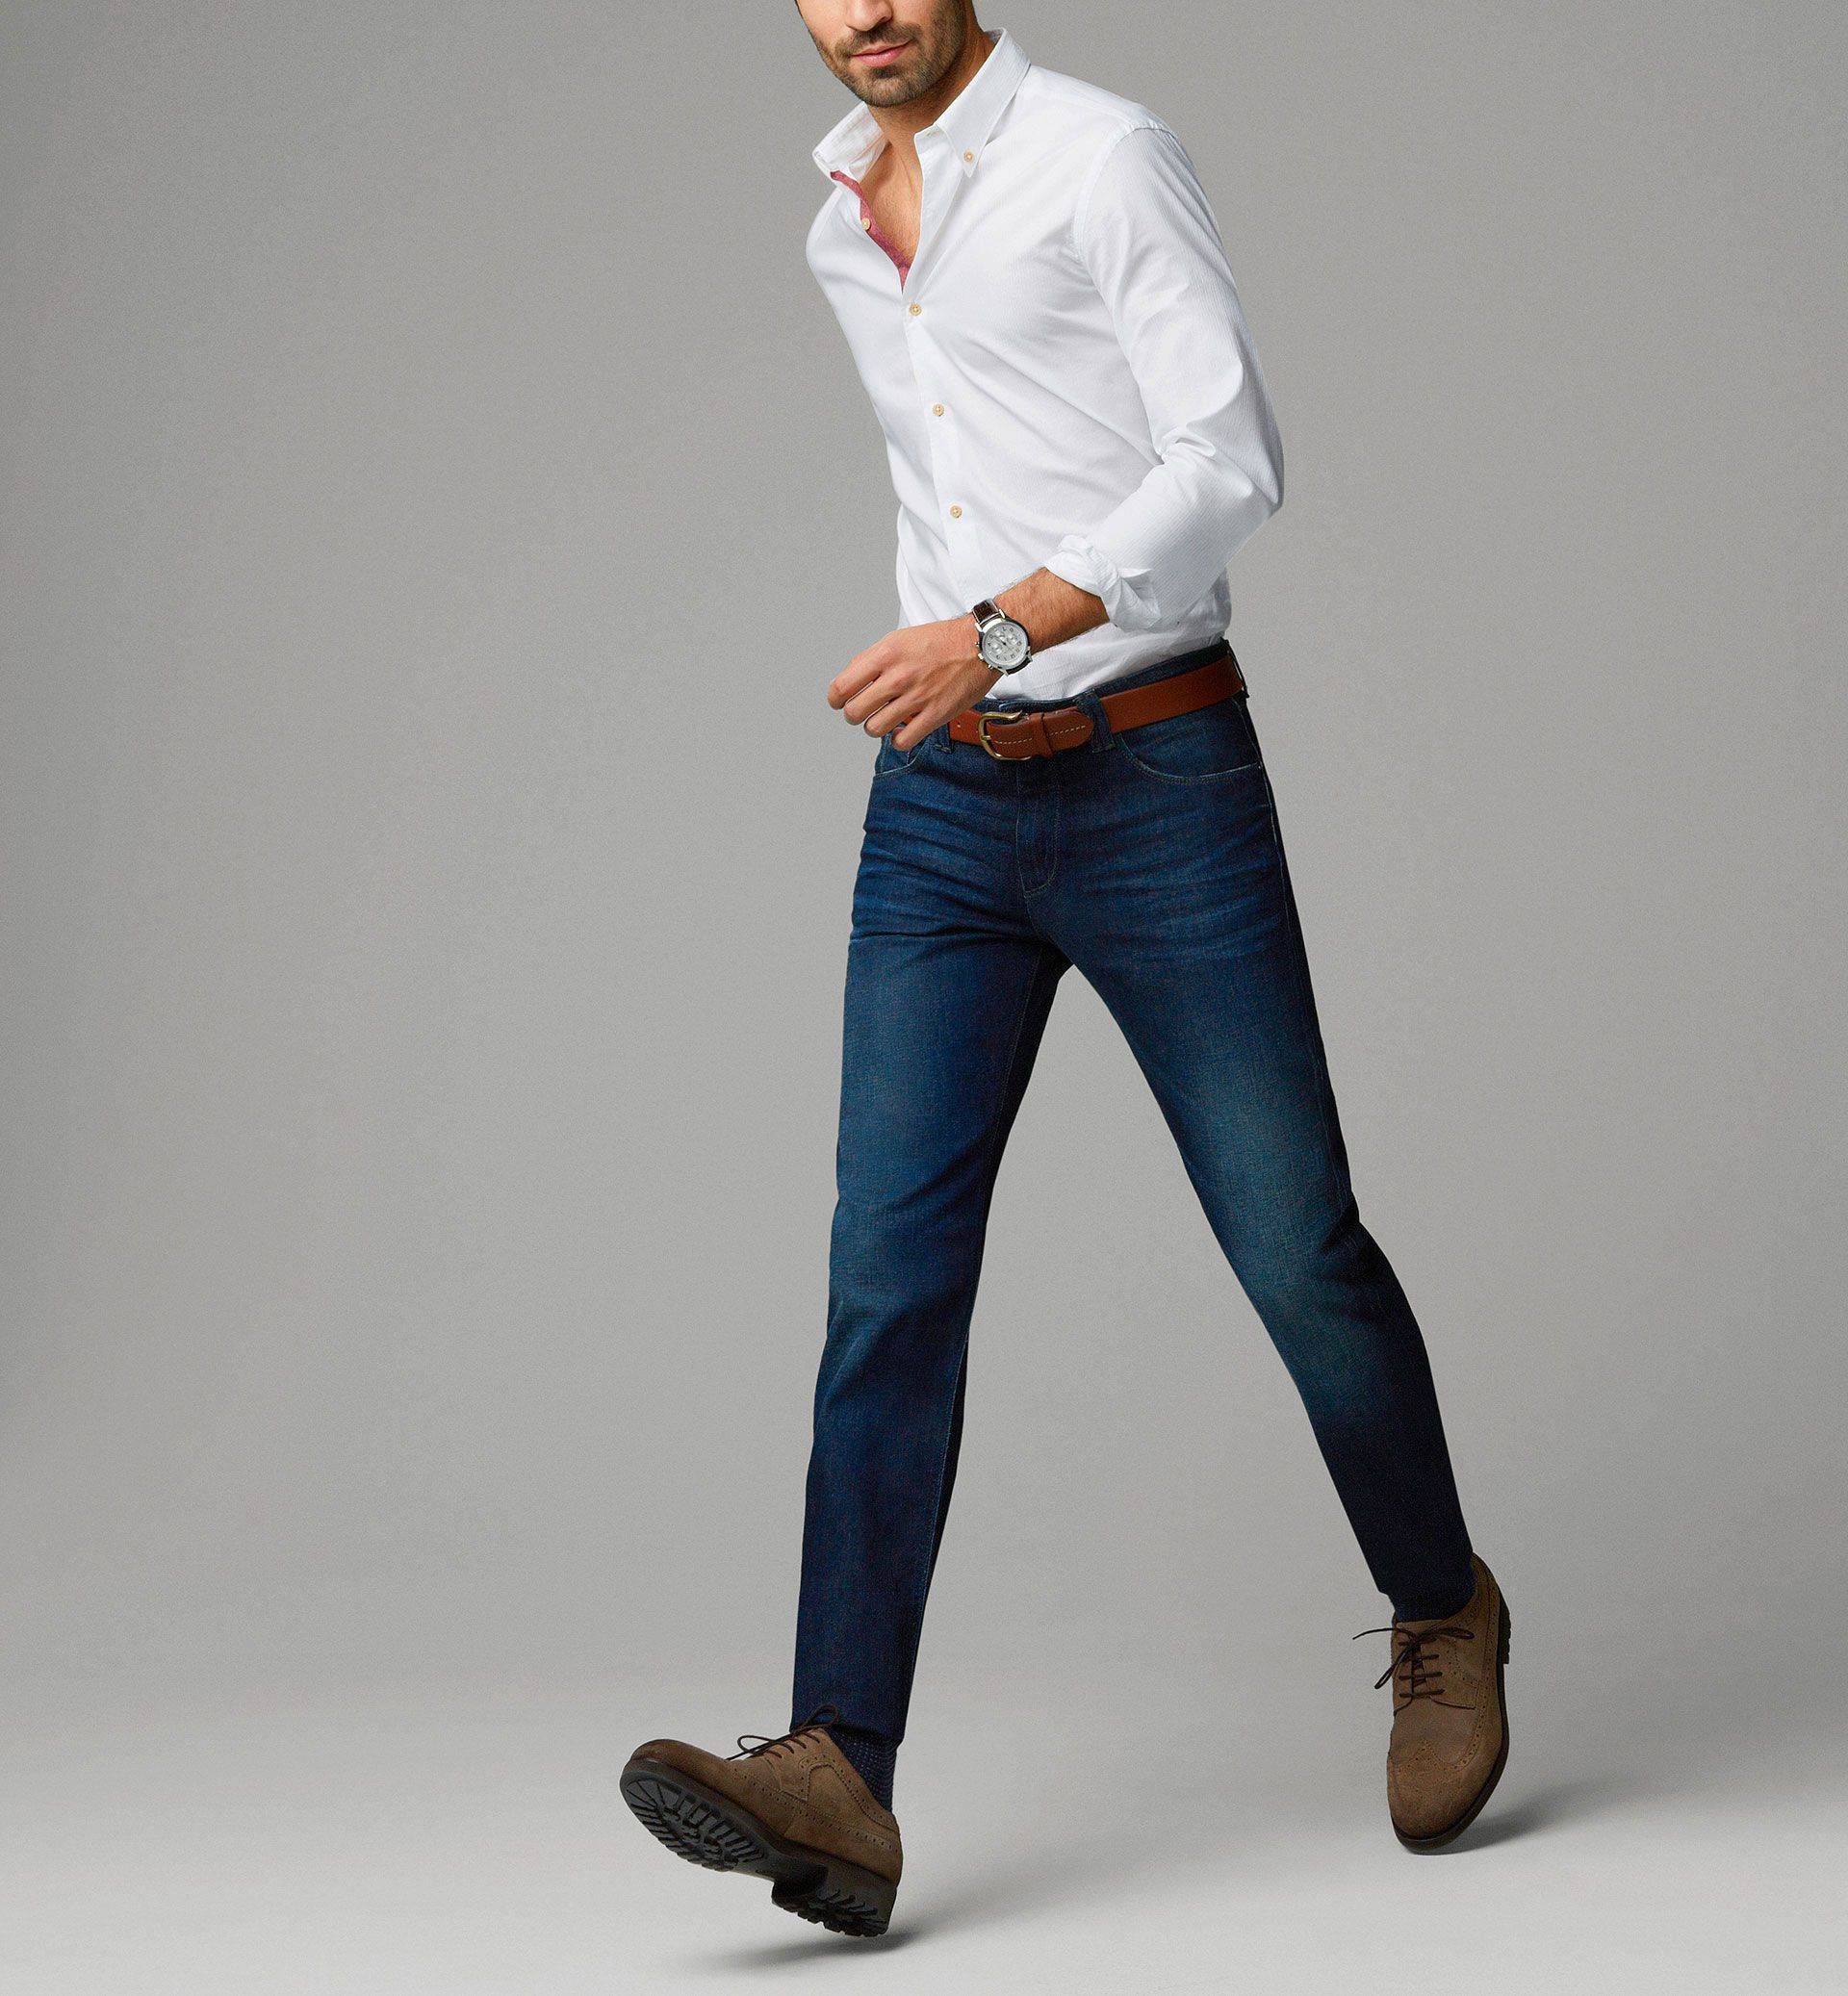 Мужская джинсовая рубашка: особенности выбора